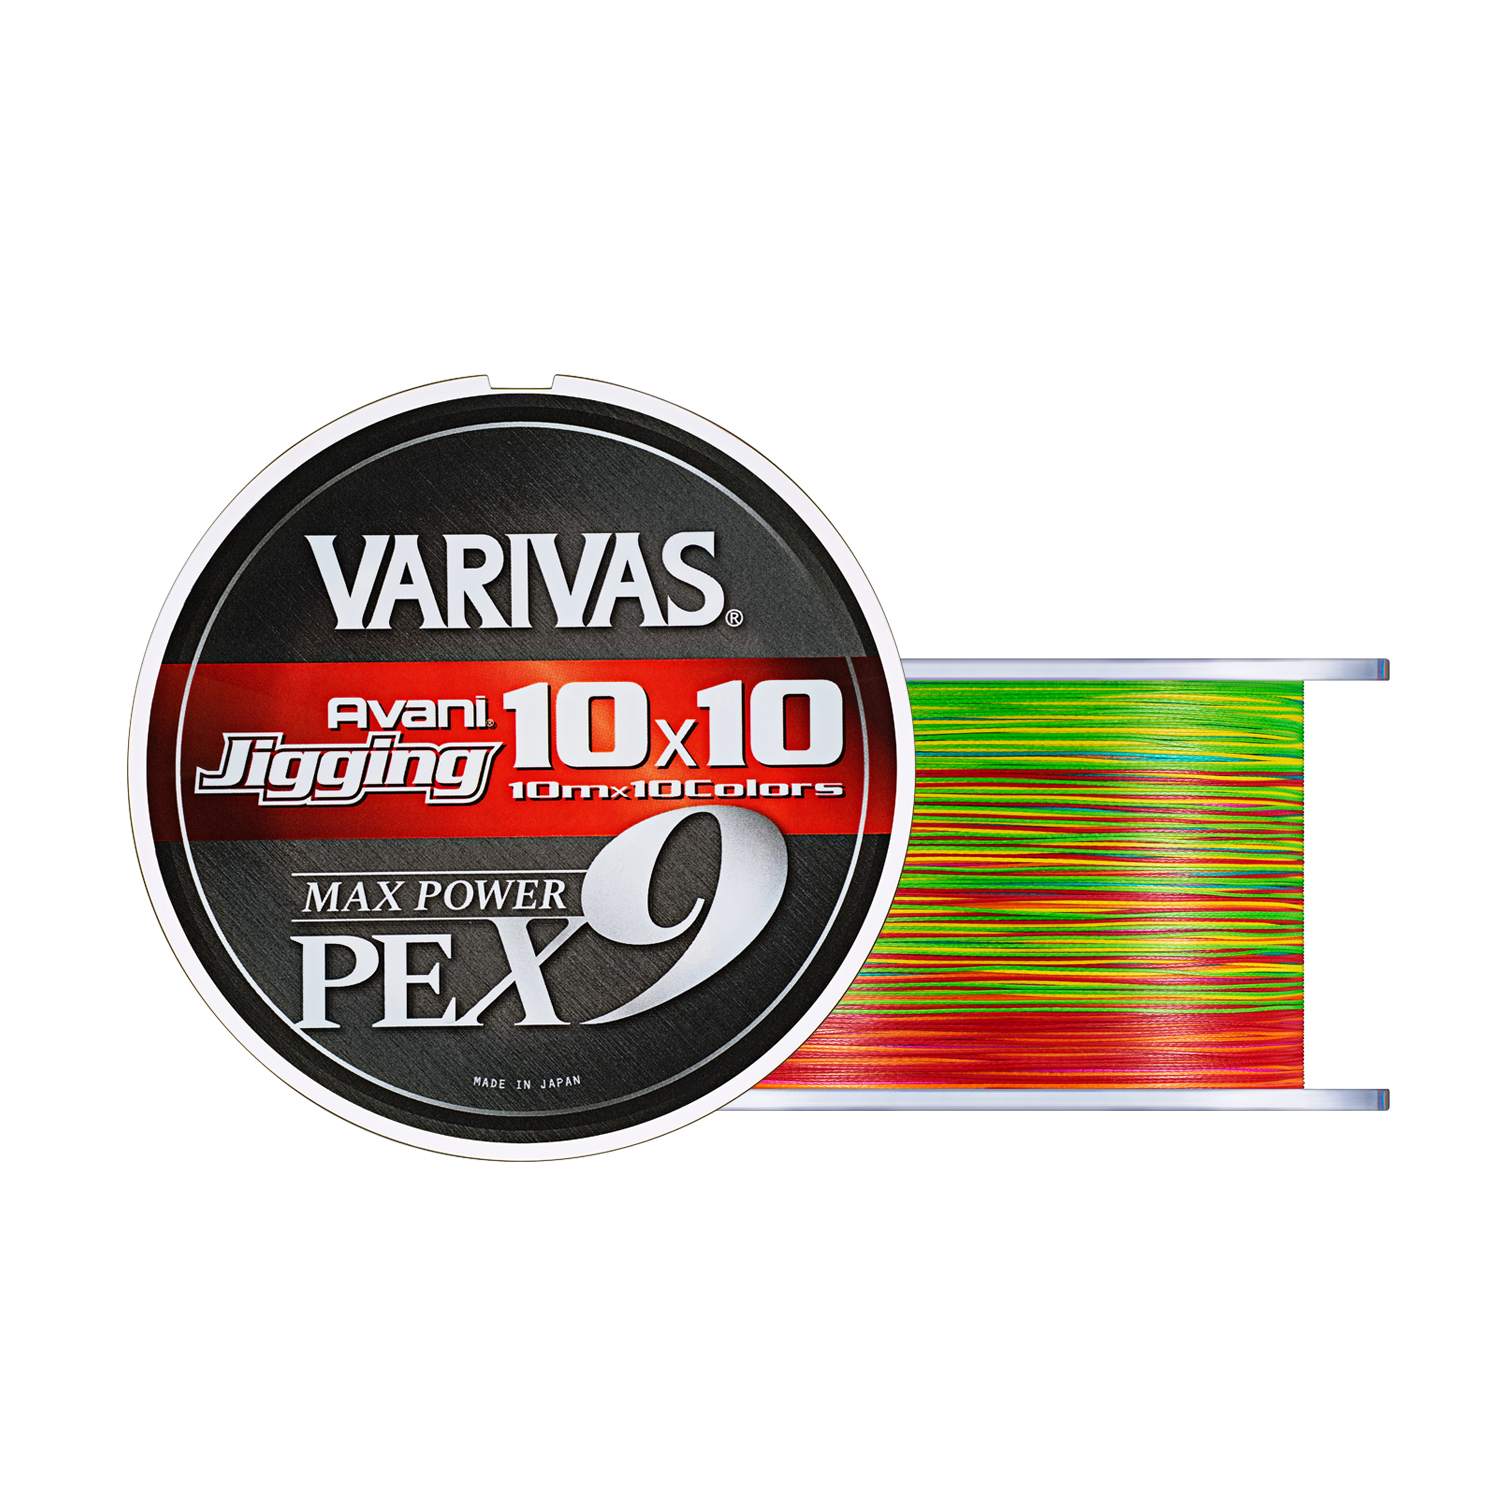 Treccia Varivas Avani Jigging 10x10 Max Power PE X9 600 m PE 1.5